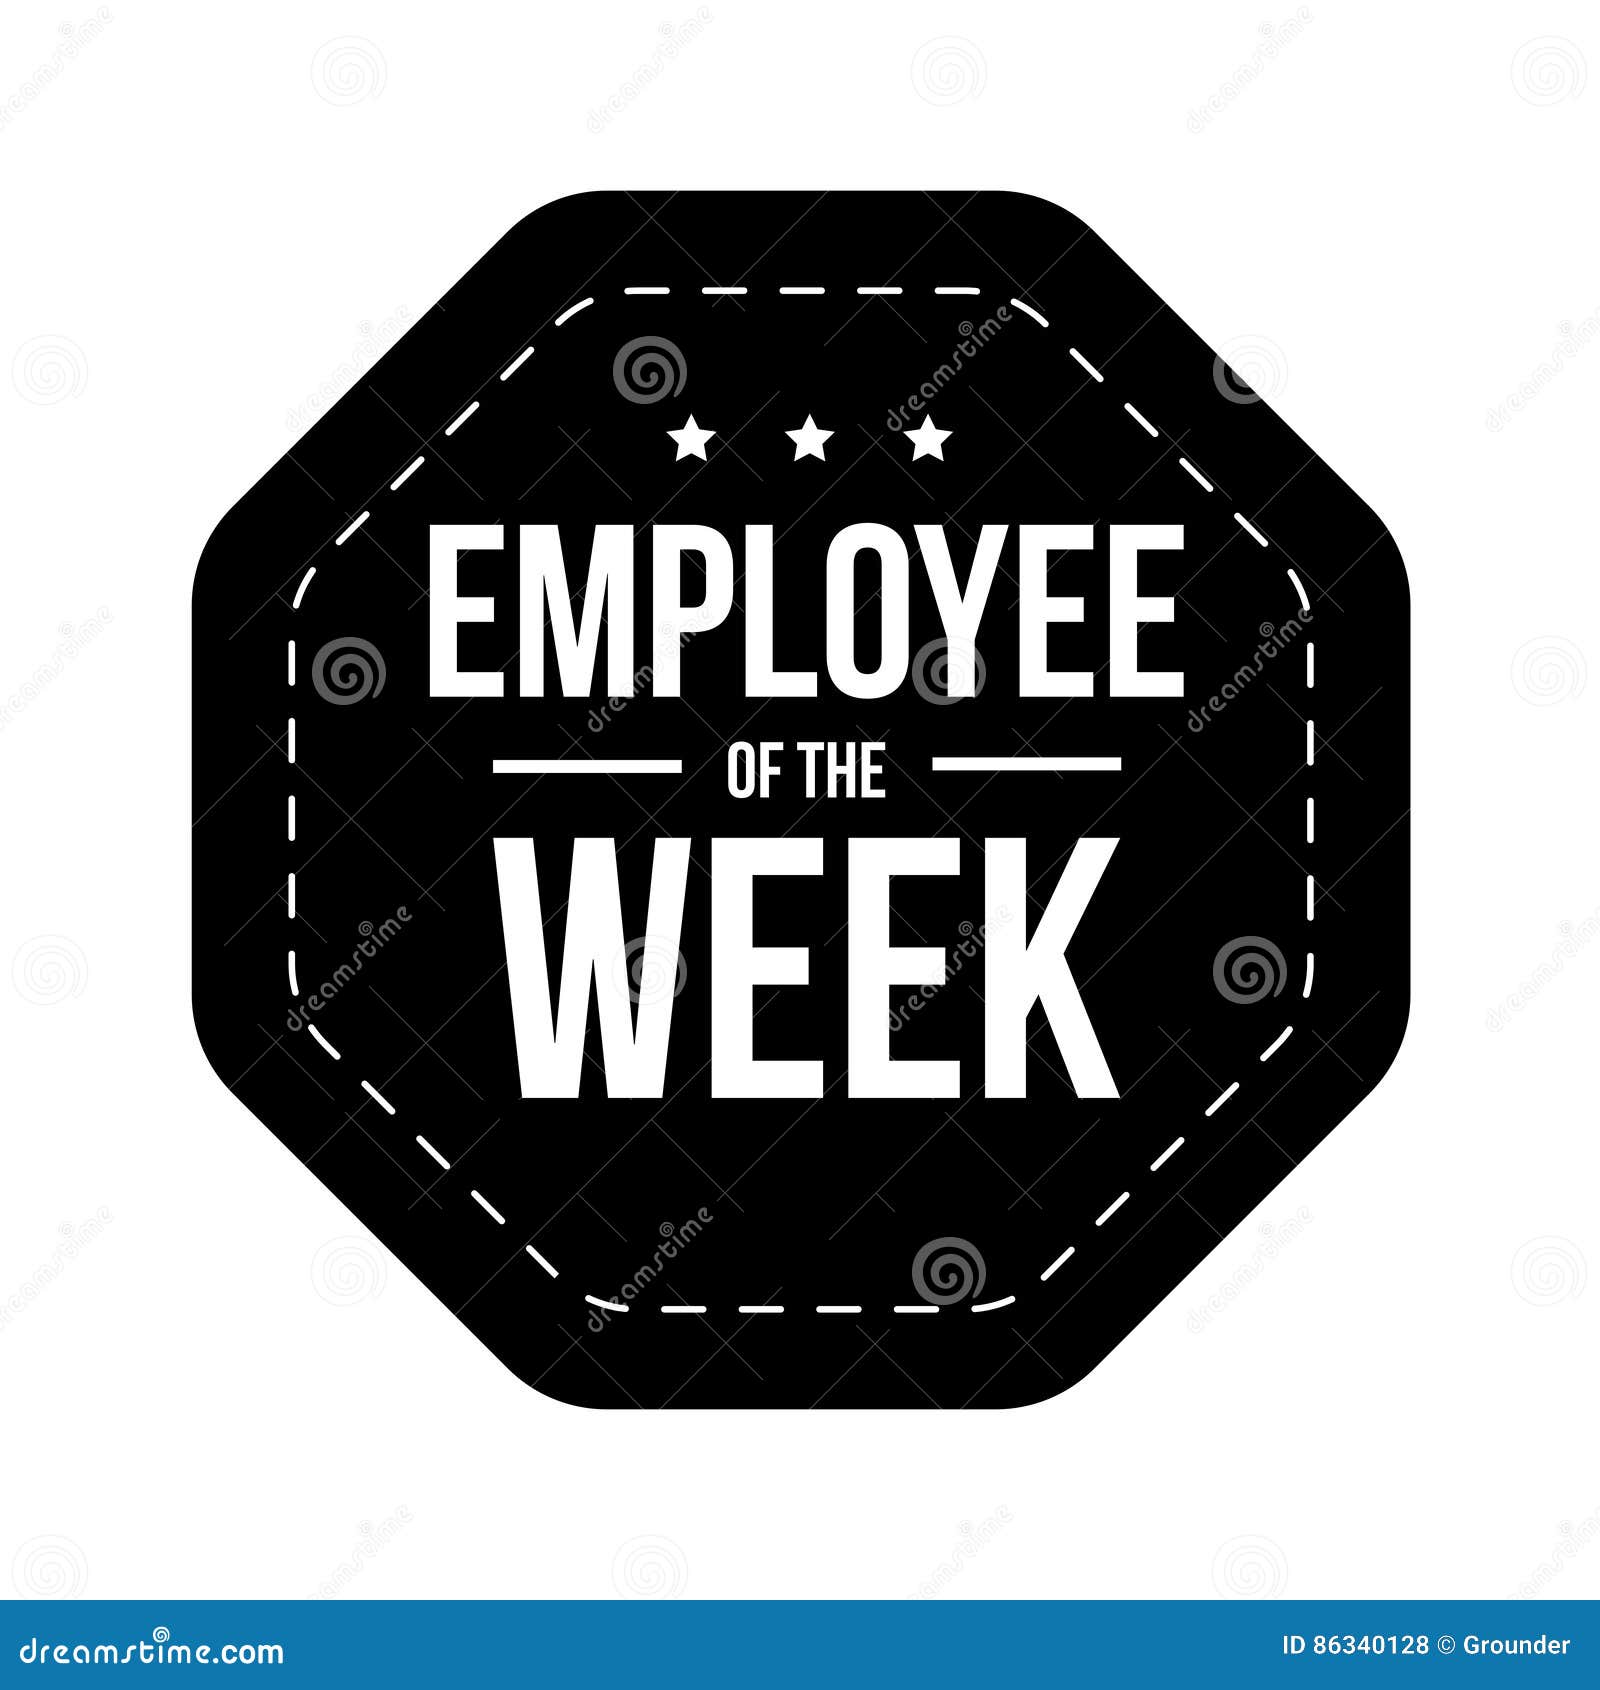 employee of the week  badge